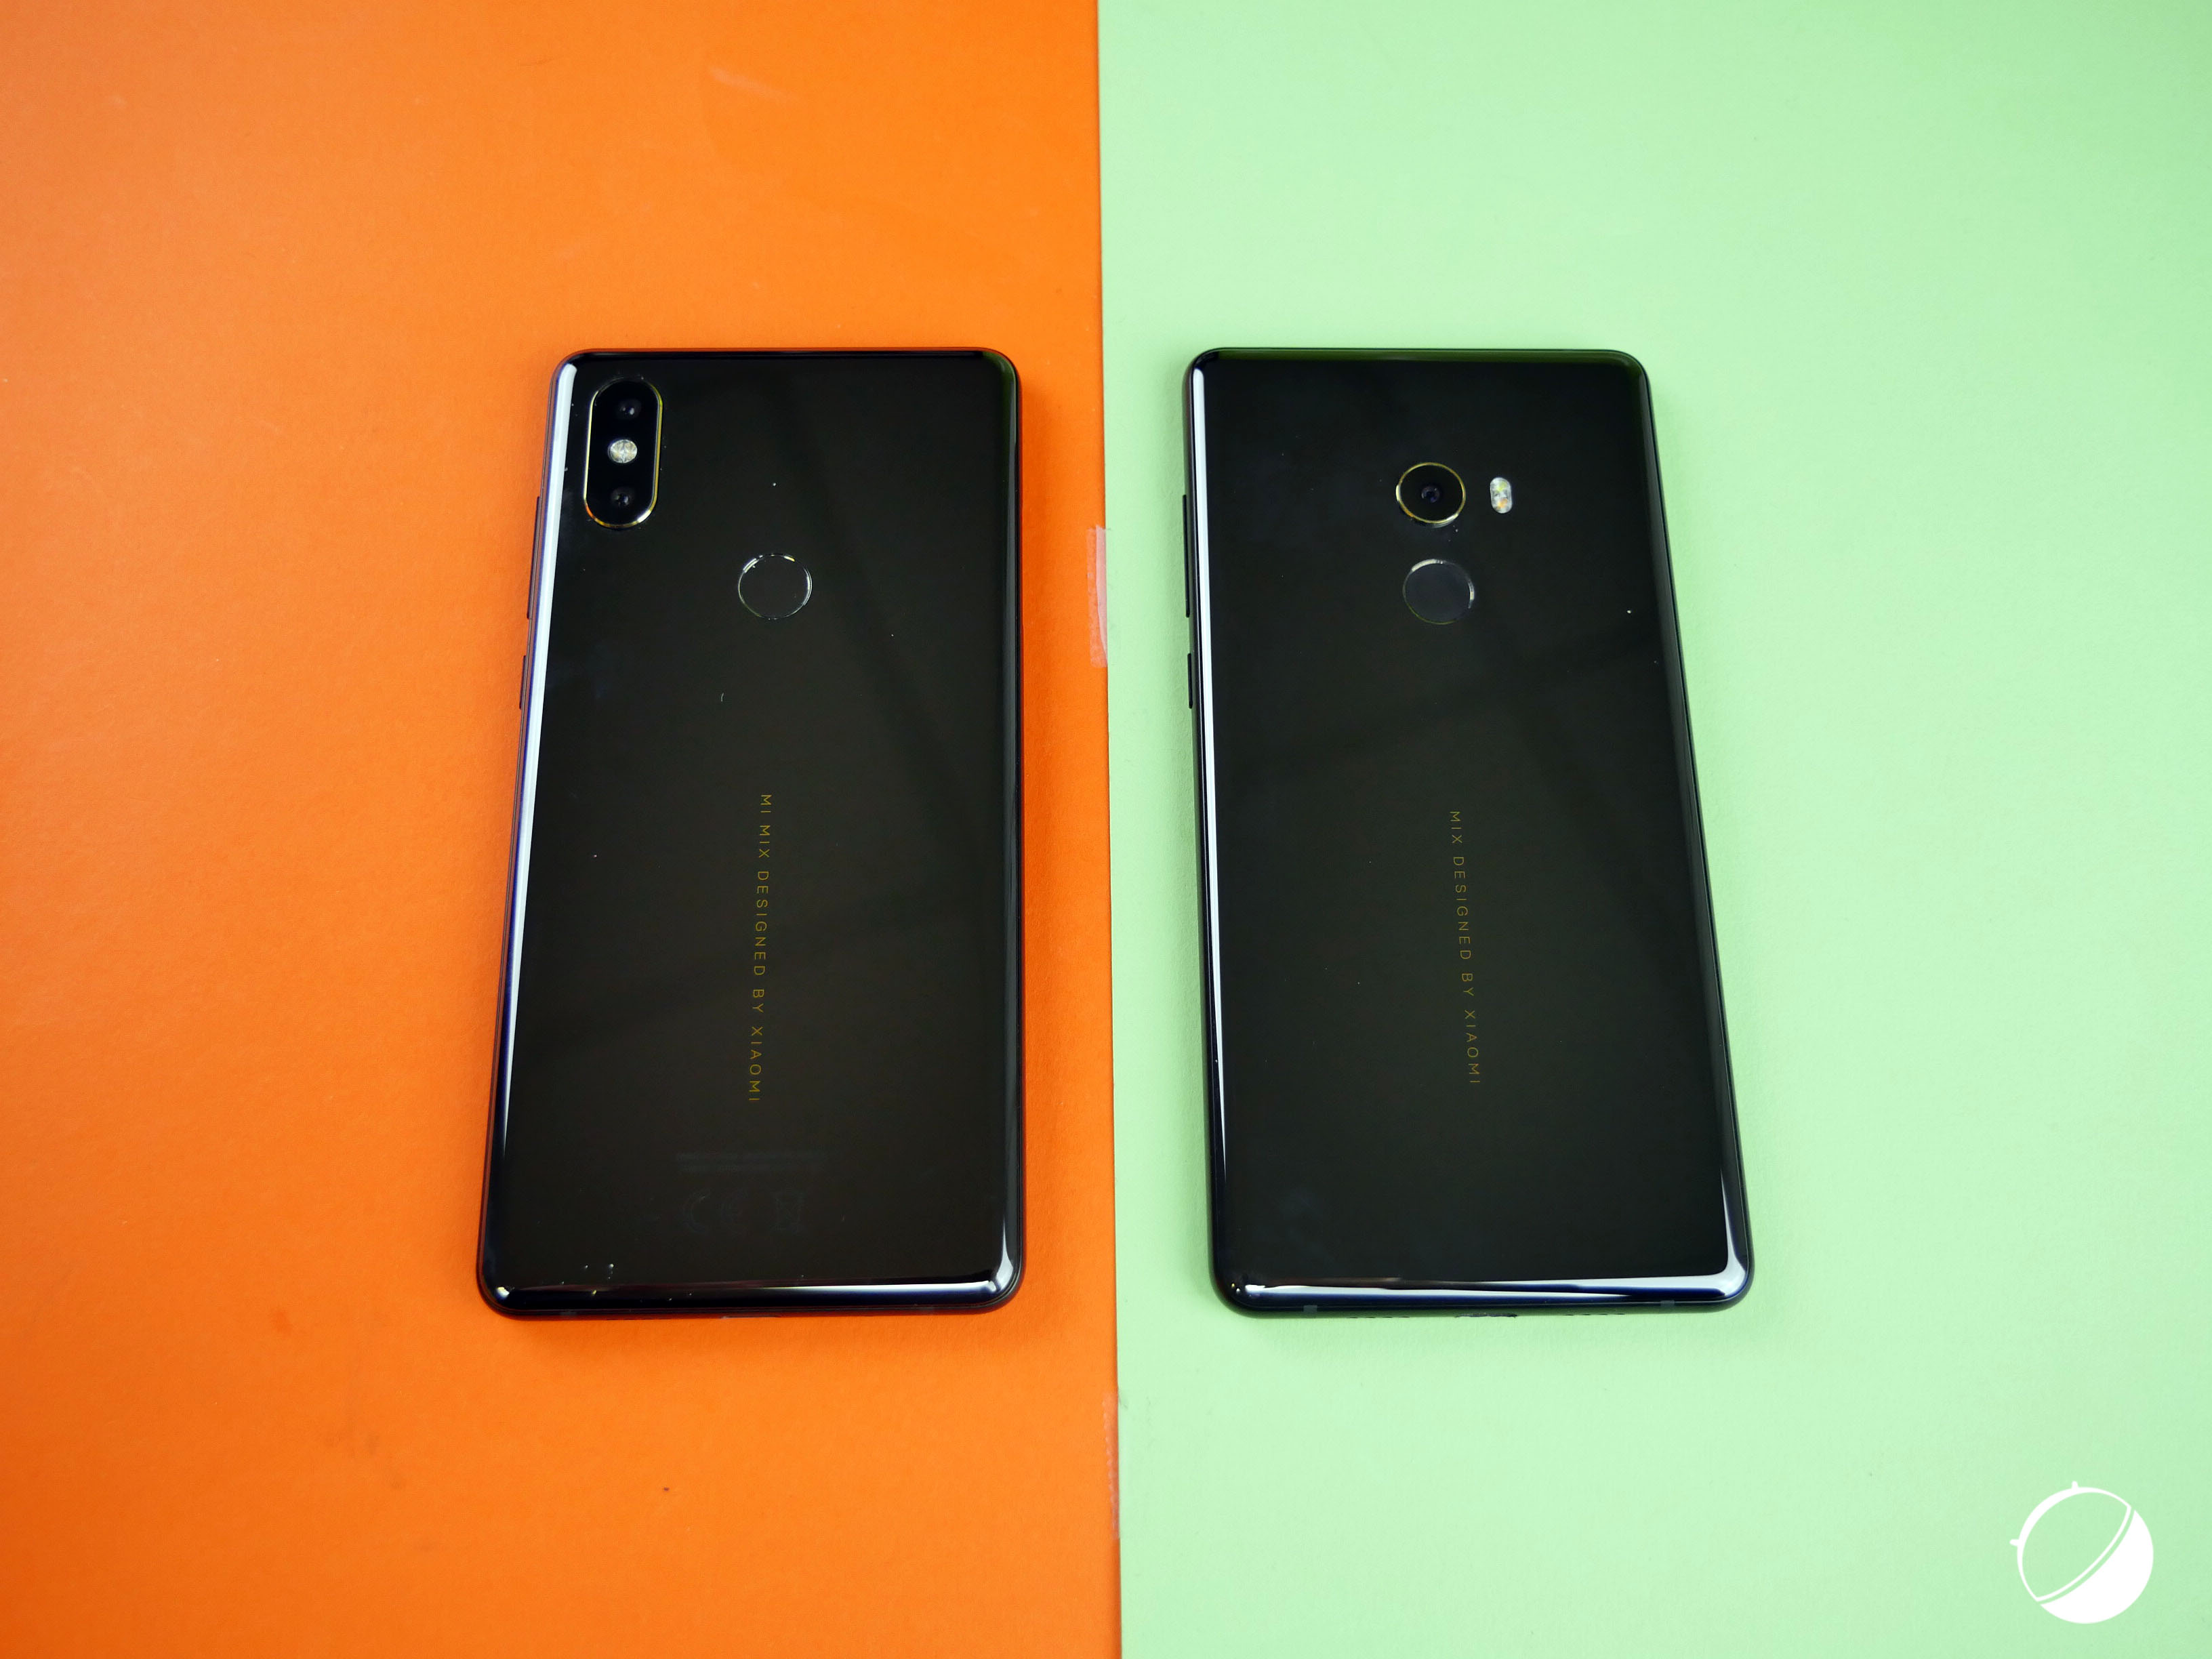 Xiaomi Mi Mix 2S vs Mix 2 dos